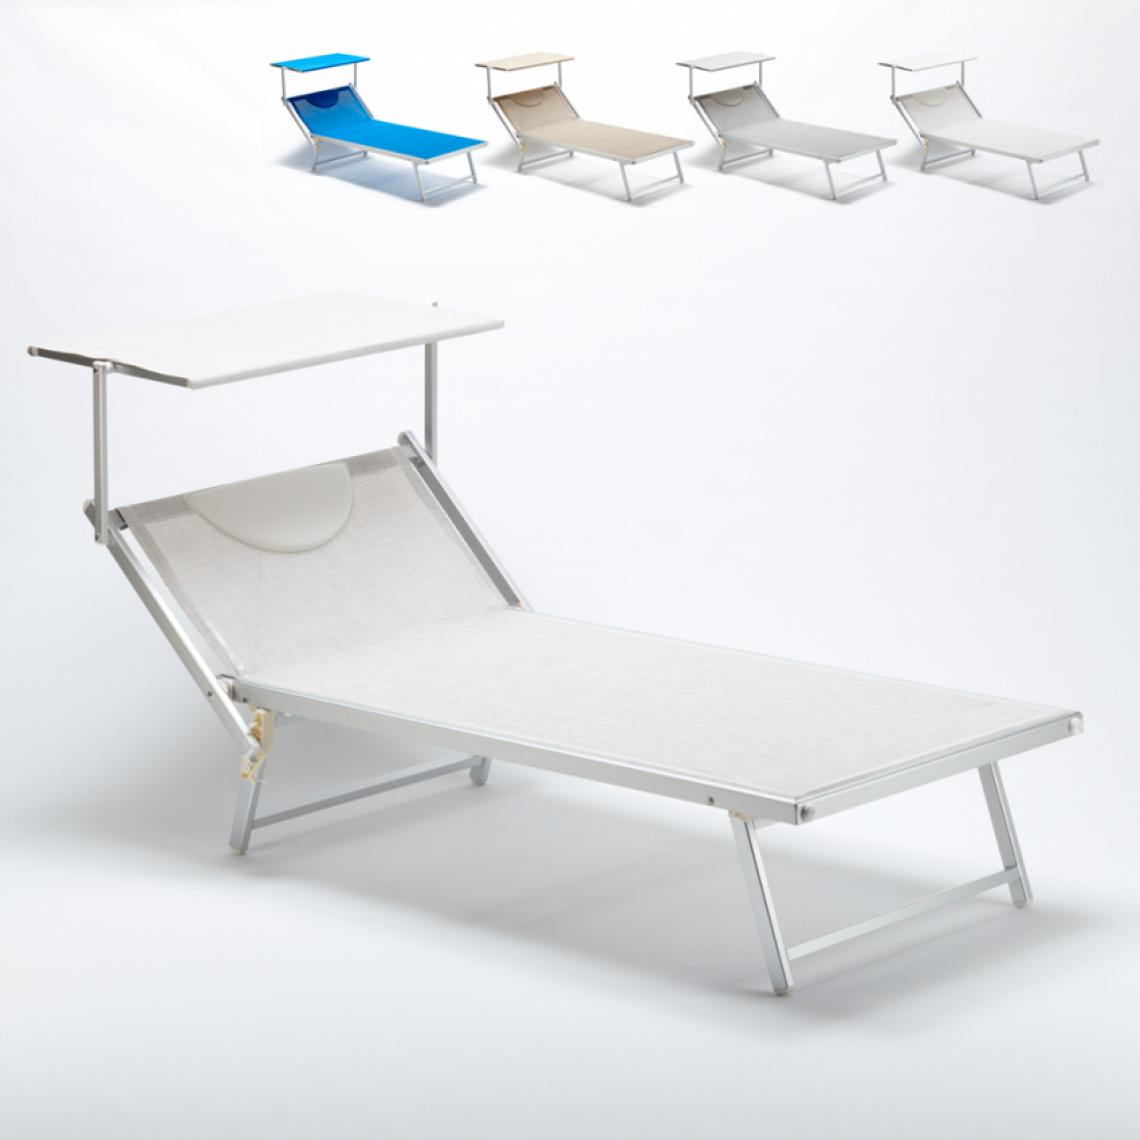 Beach And Garden Design - Bain de soleil Xxl professionnel chaise longue transat piscine aluminium Italia Extralarge, Couleur: Blanc - Transats, chaises longues